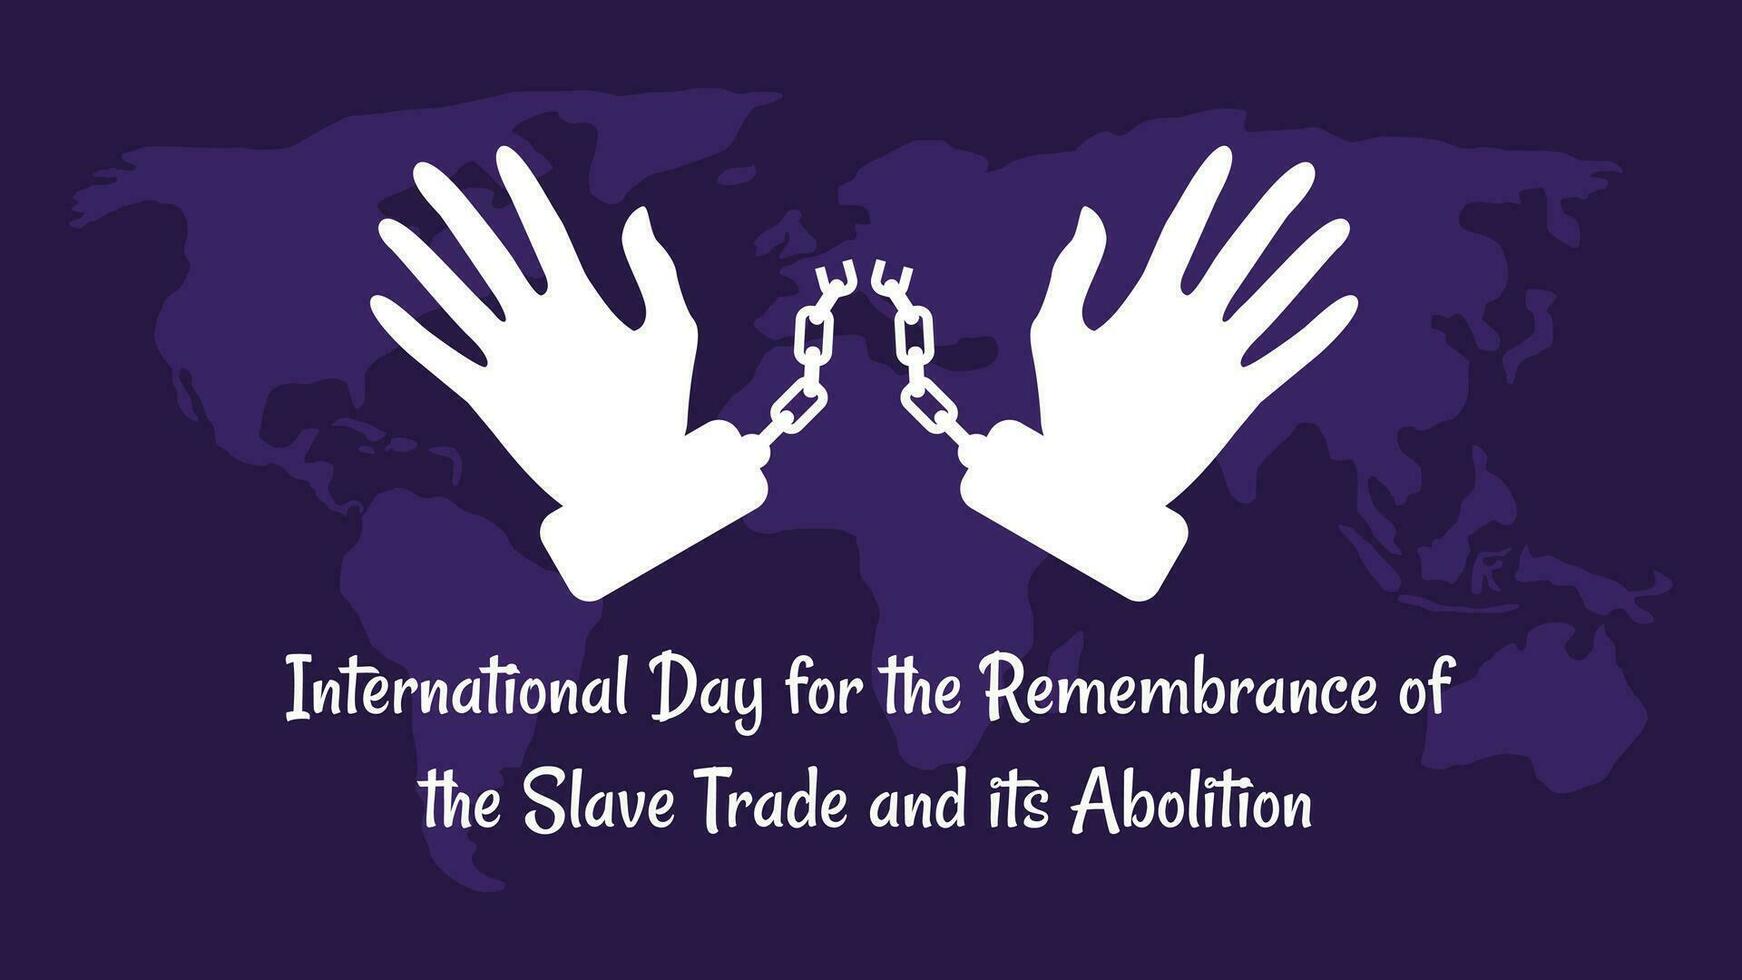 international journée pour le souvenir de le esclave Commerce et ses abolition dans plat conception vecteur